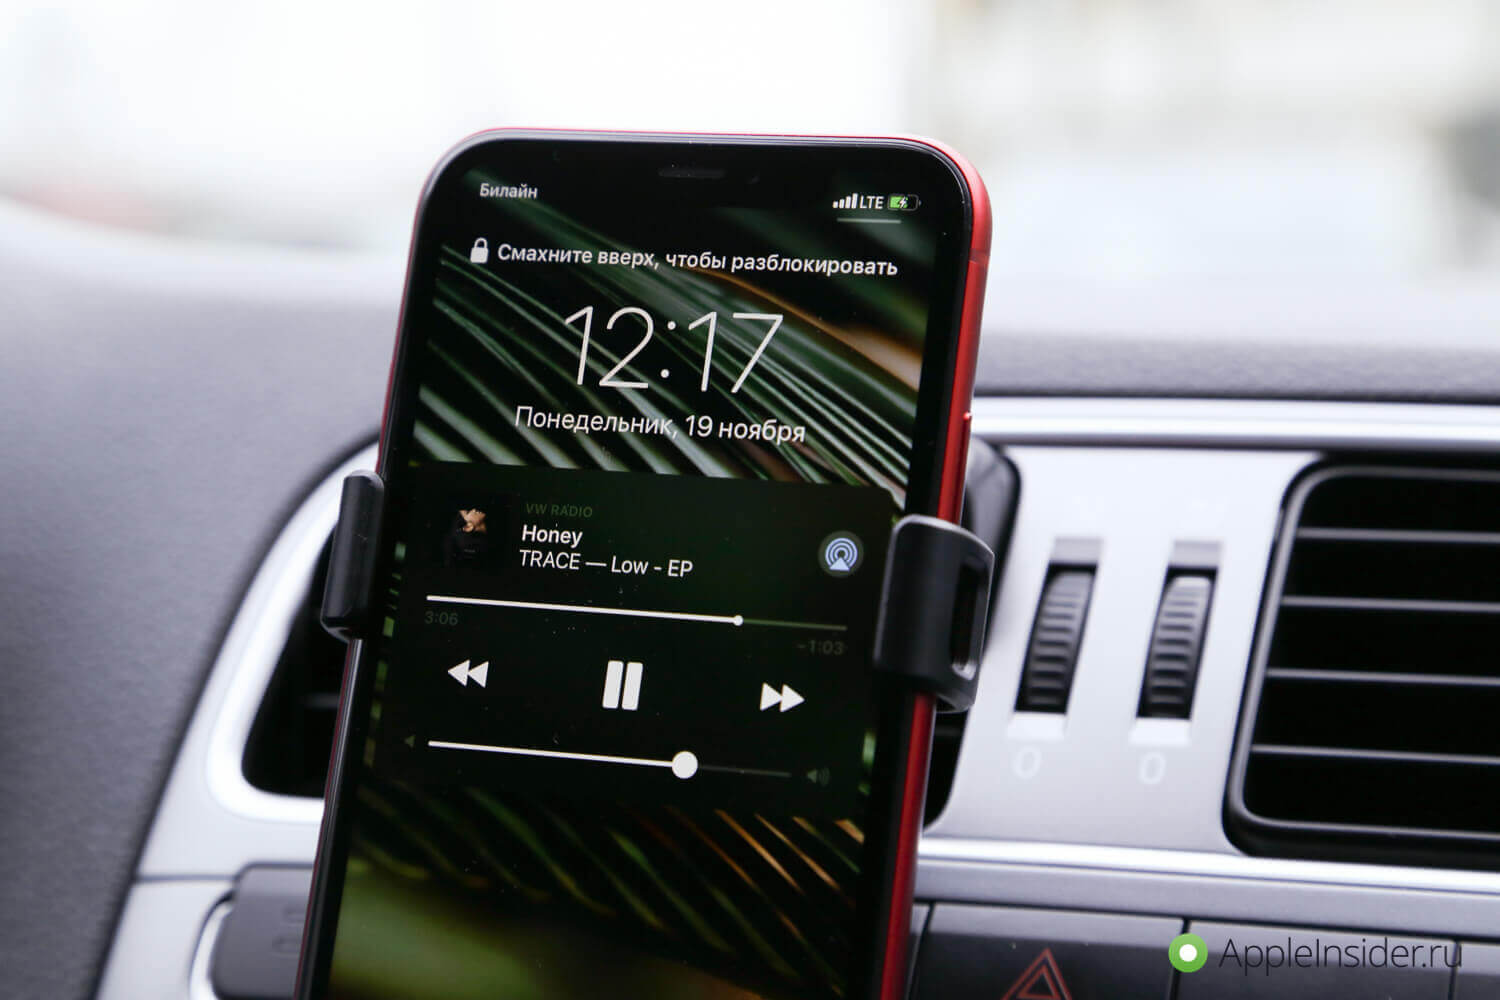 Как заряжать iPhone в машине без проводов | AppleInsider.ru